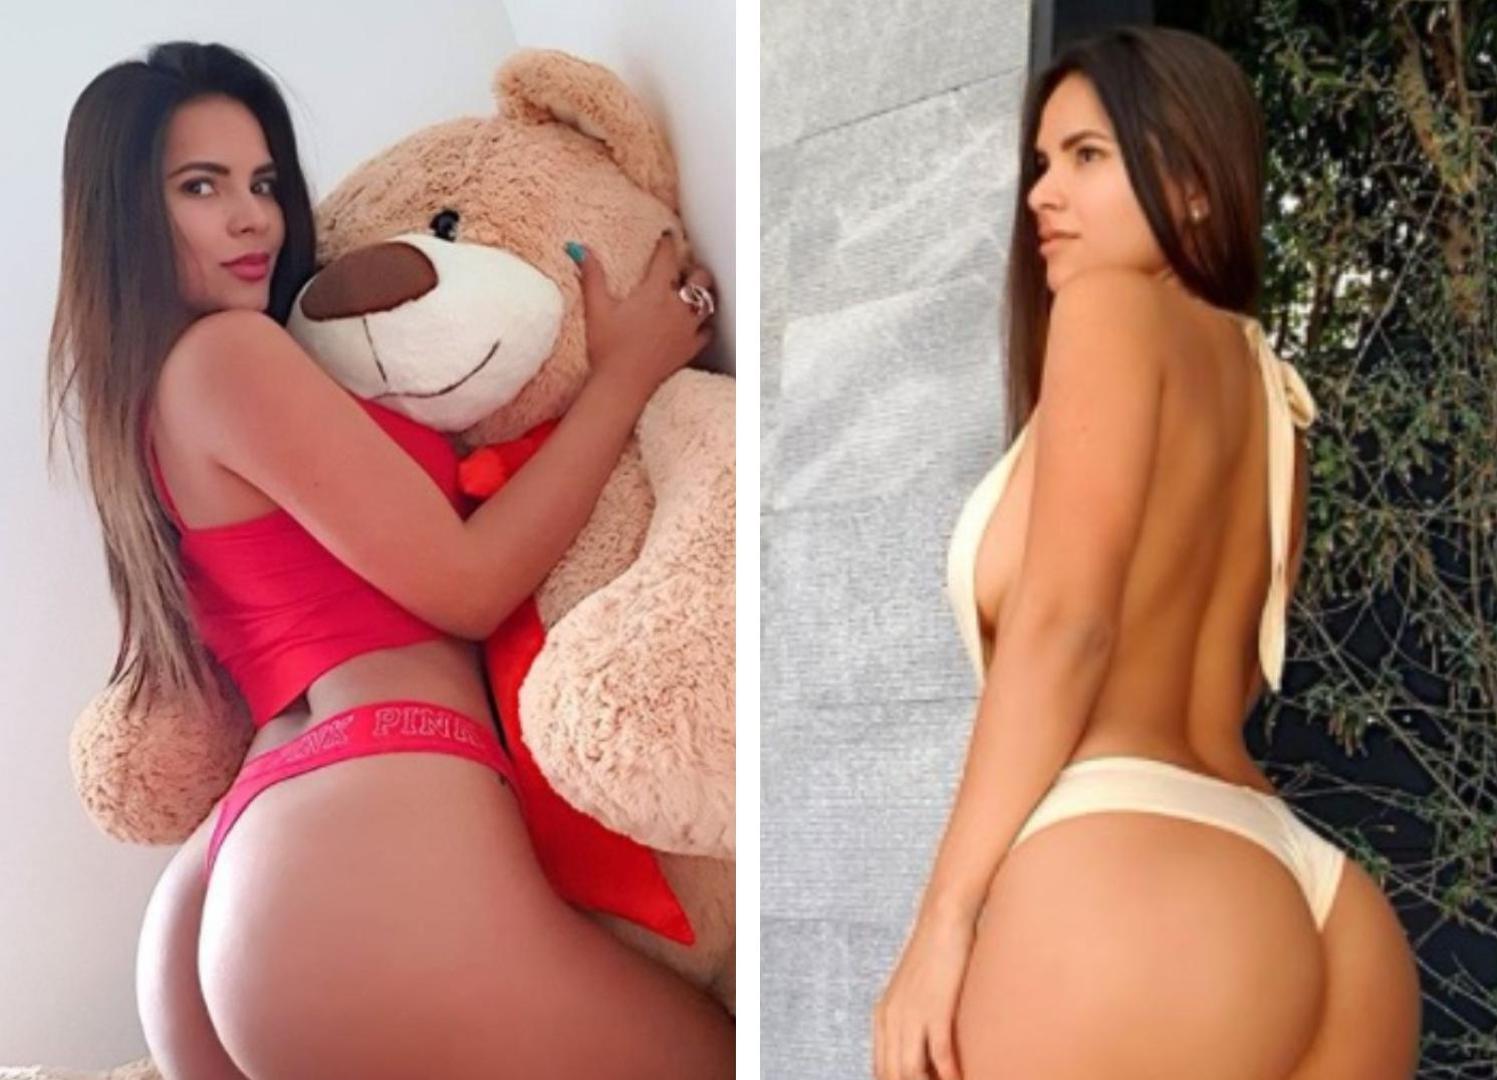 Ania Gadea je nova Ronaldinhova djevojka. Playboyeva zečica svojim je fotografijama pokorila društvene mreže. Lijepa Ania je od svog dečka za Božić dobila plišanog medu...